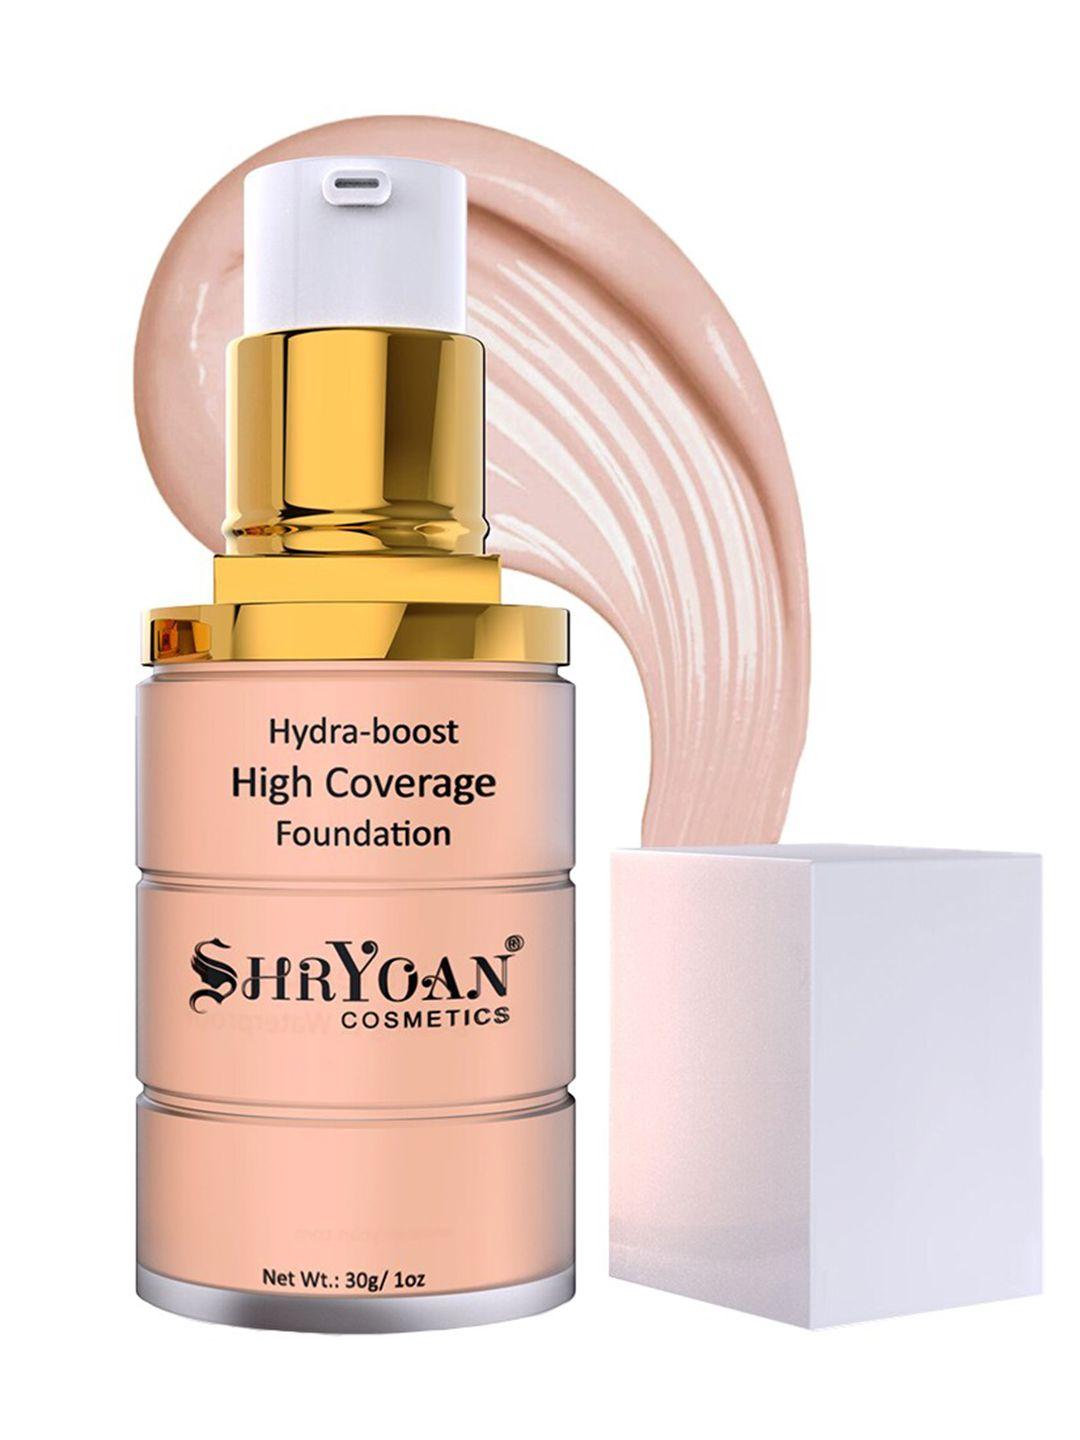 shryoan hydra-boost high coverage foundation